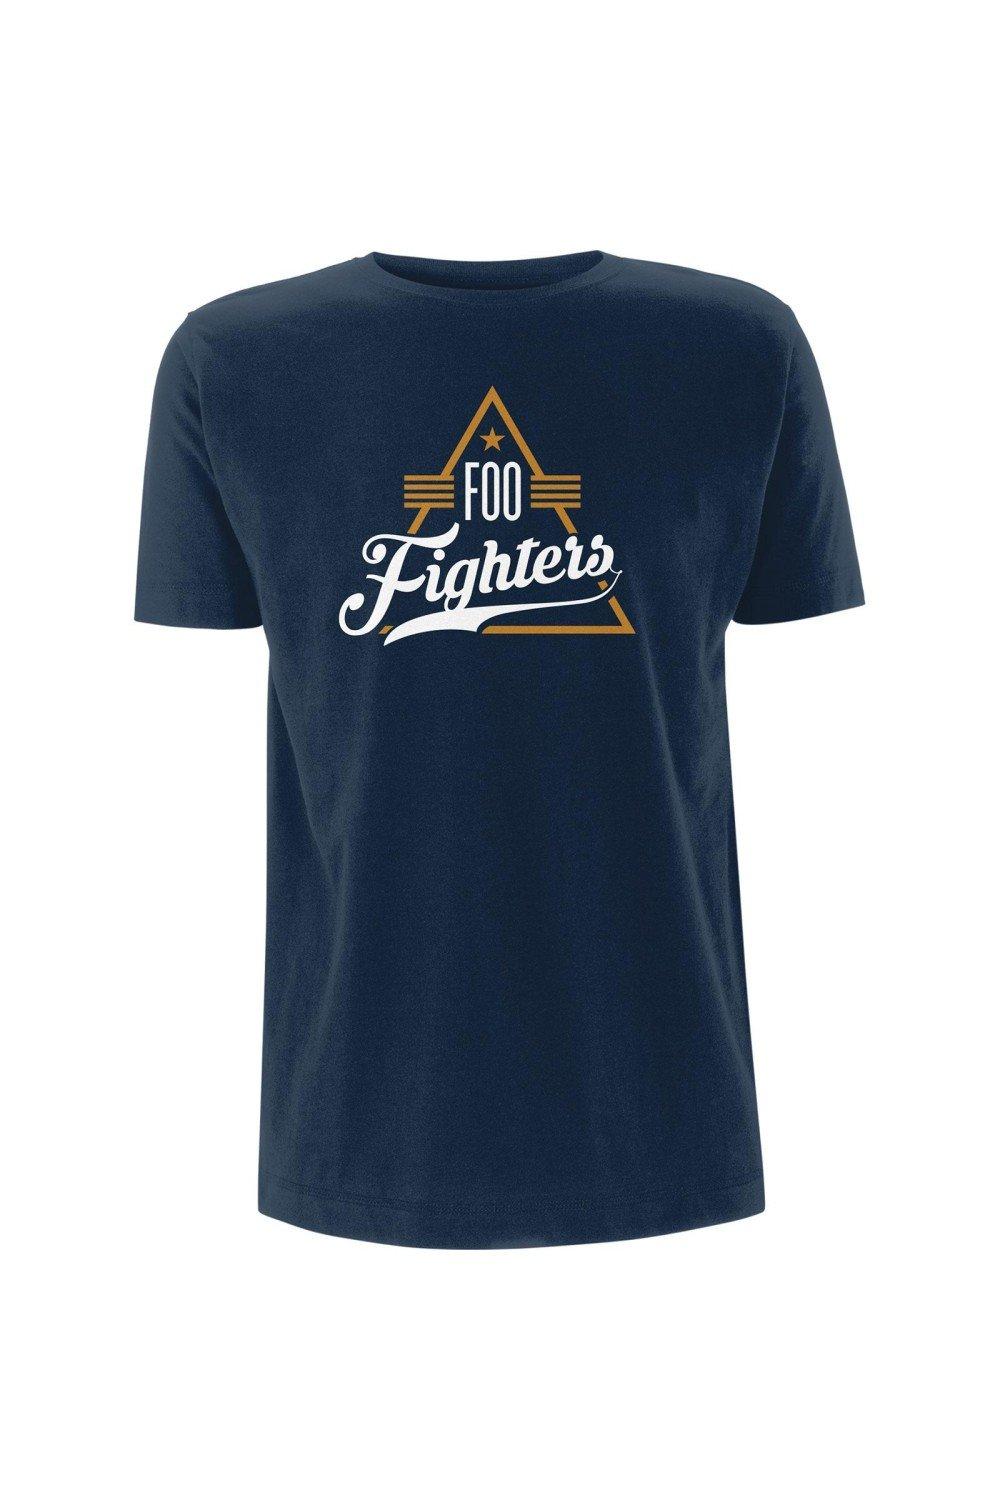 Треугольная футболка Foo Fighters, темно-синий цена и фото